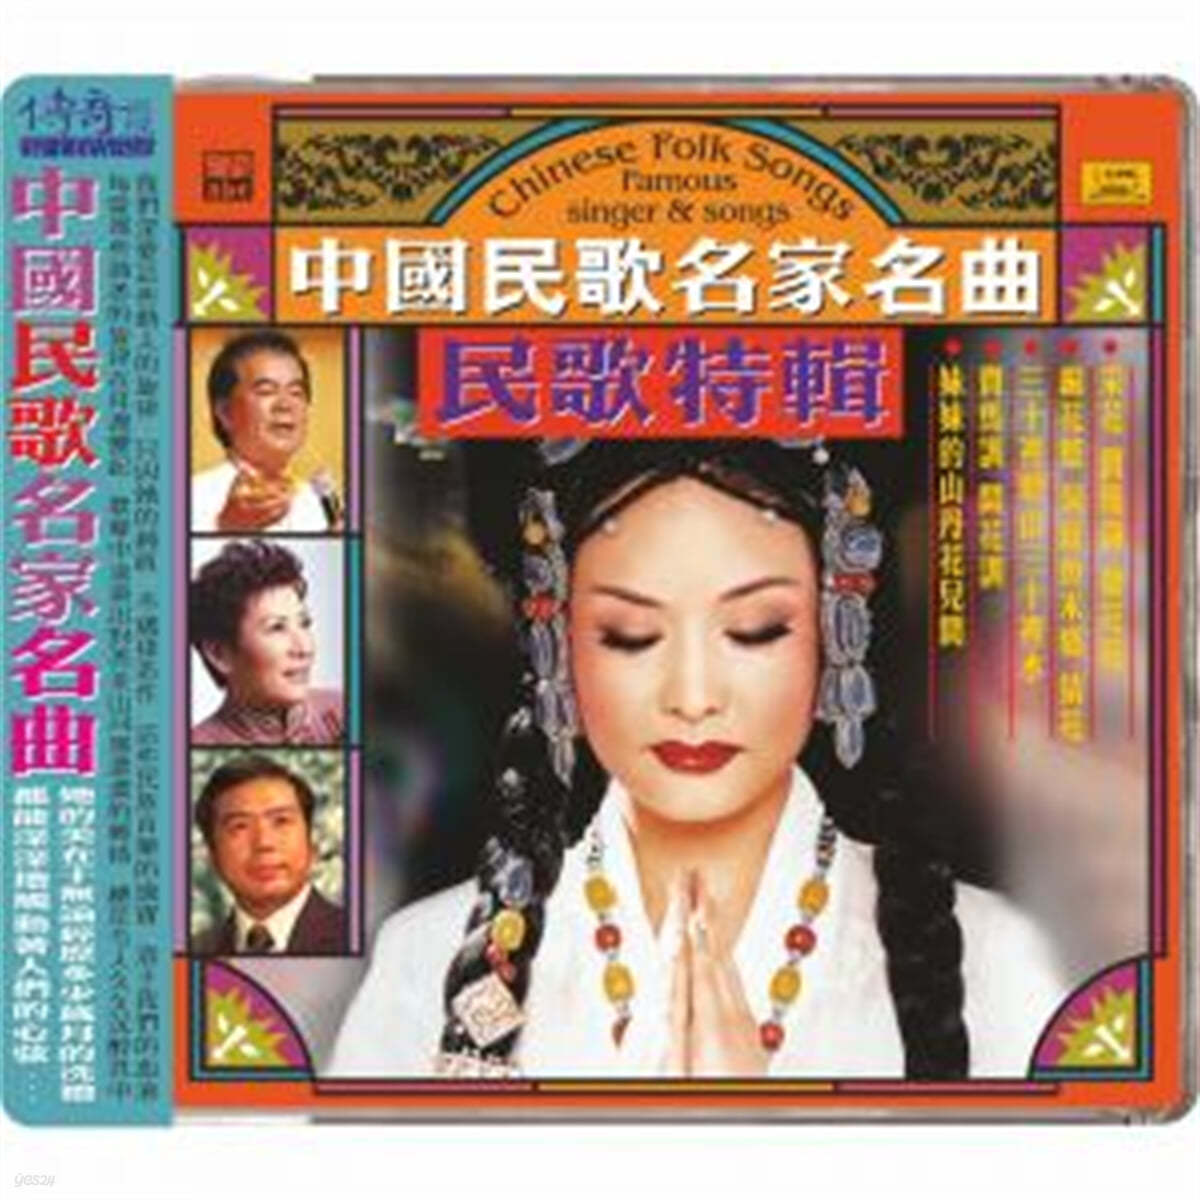 60-80년대 중국 전역 소수민족들의 민요집 (Chinese Folk Songs : Famous Singer &amp; Songs) 